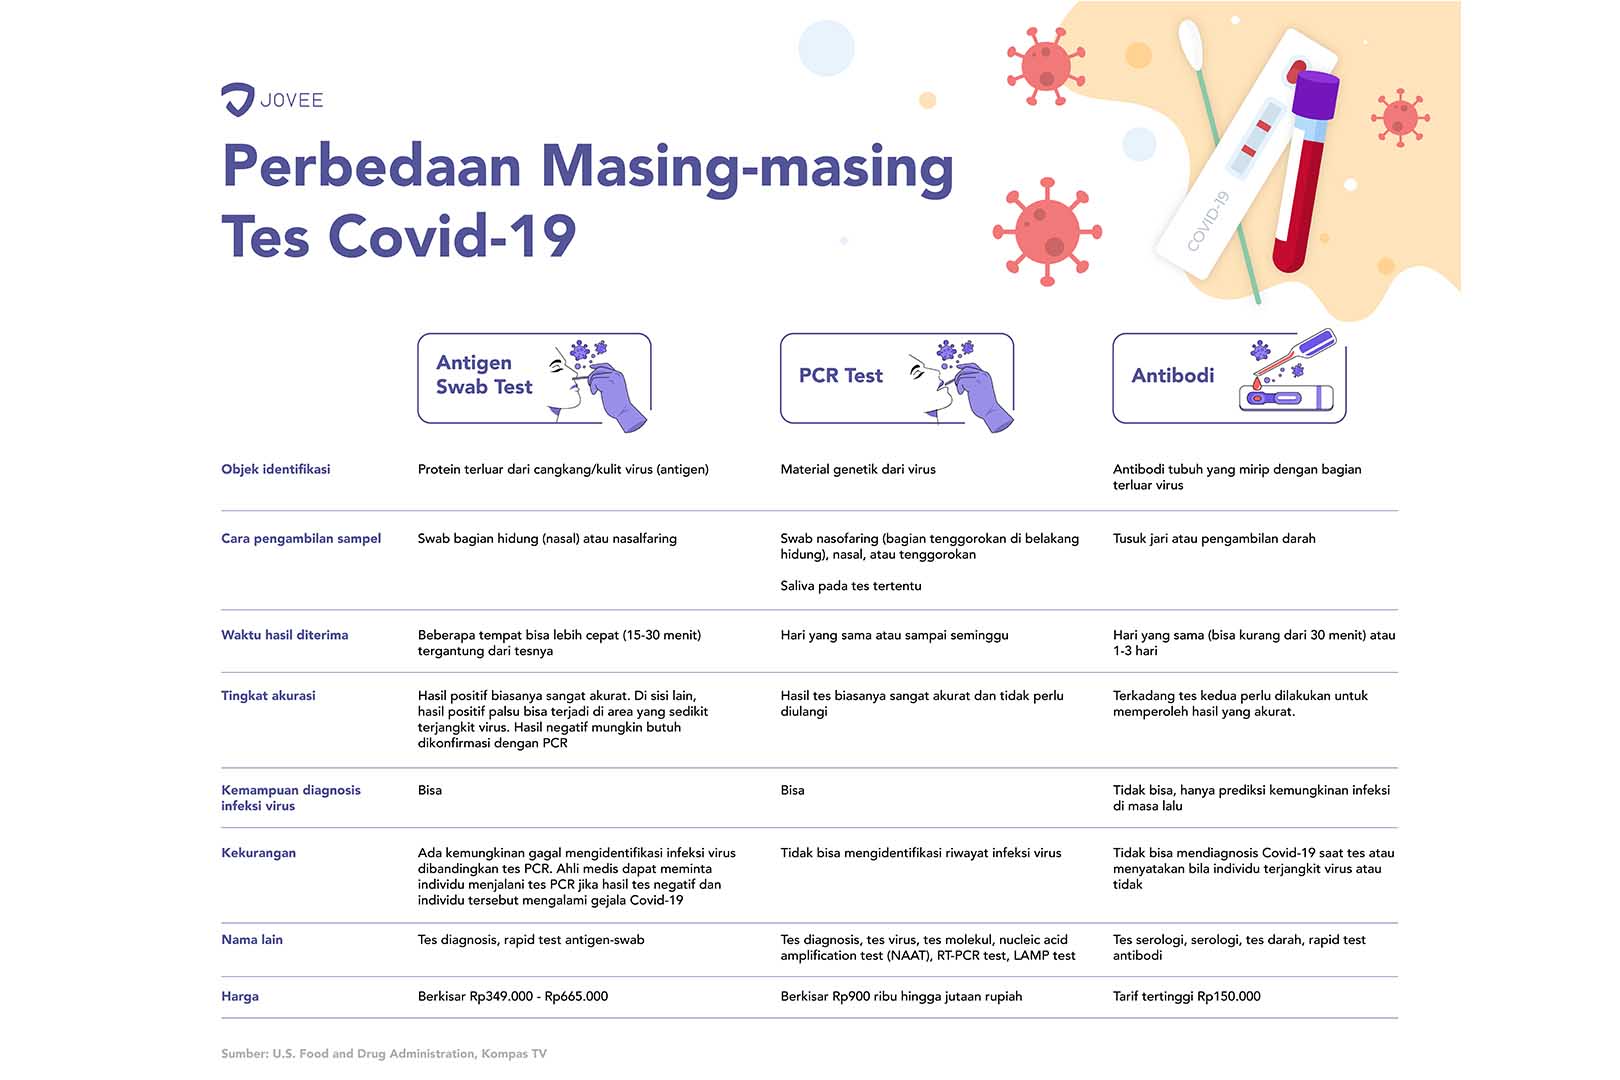 Mengenal Tes Covid 19 Dari Antigen Swab Test Hingga Antibodi Jovee Id